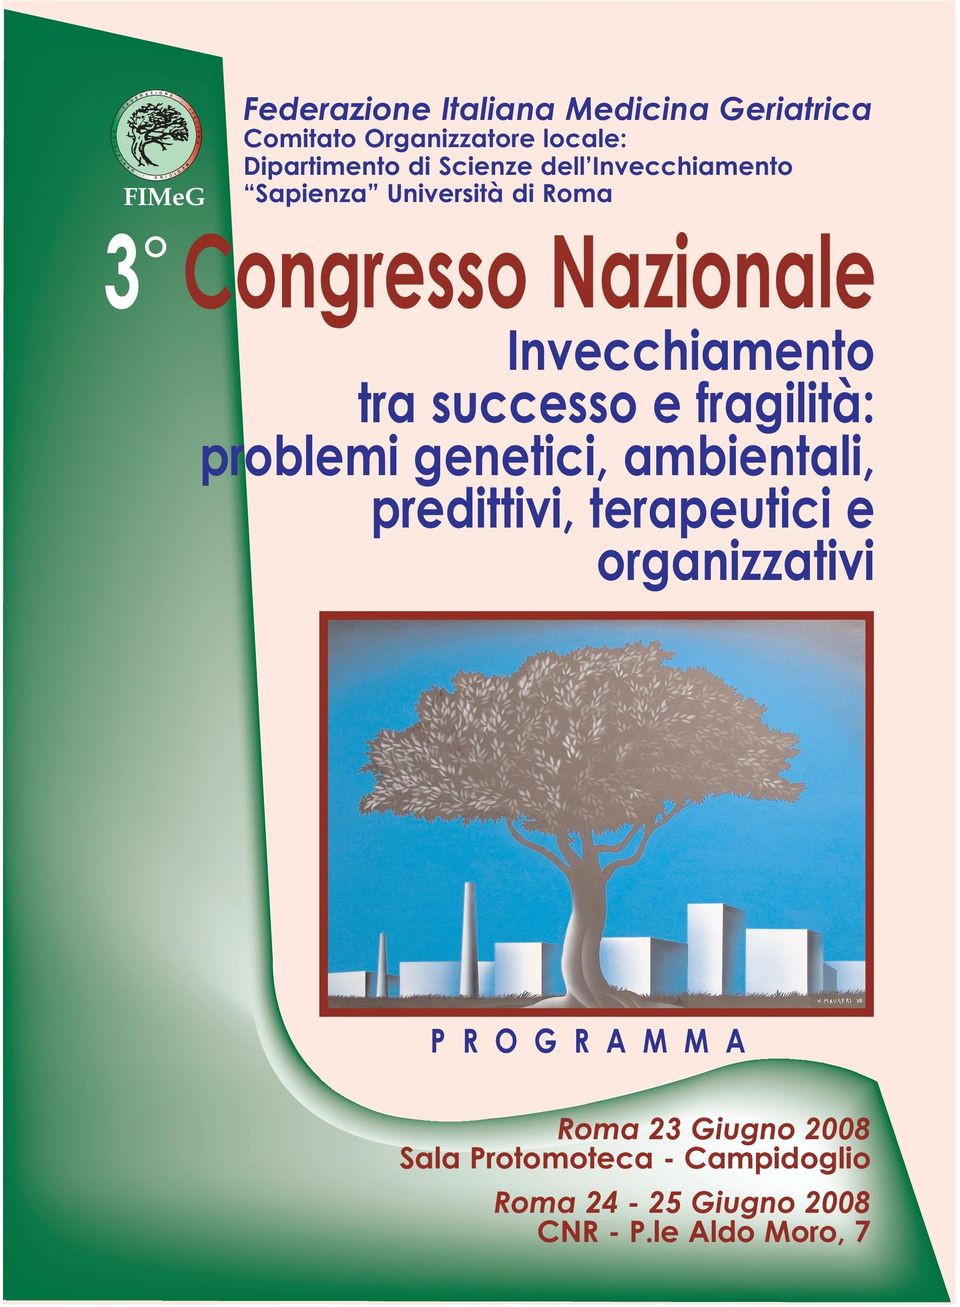 3 Congresso Nazionale Invecchiamento tra successo e fragilità: problemi genetici, ambientali, predittivi, terapeutici e